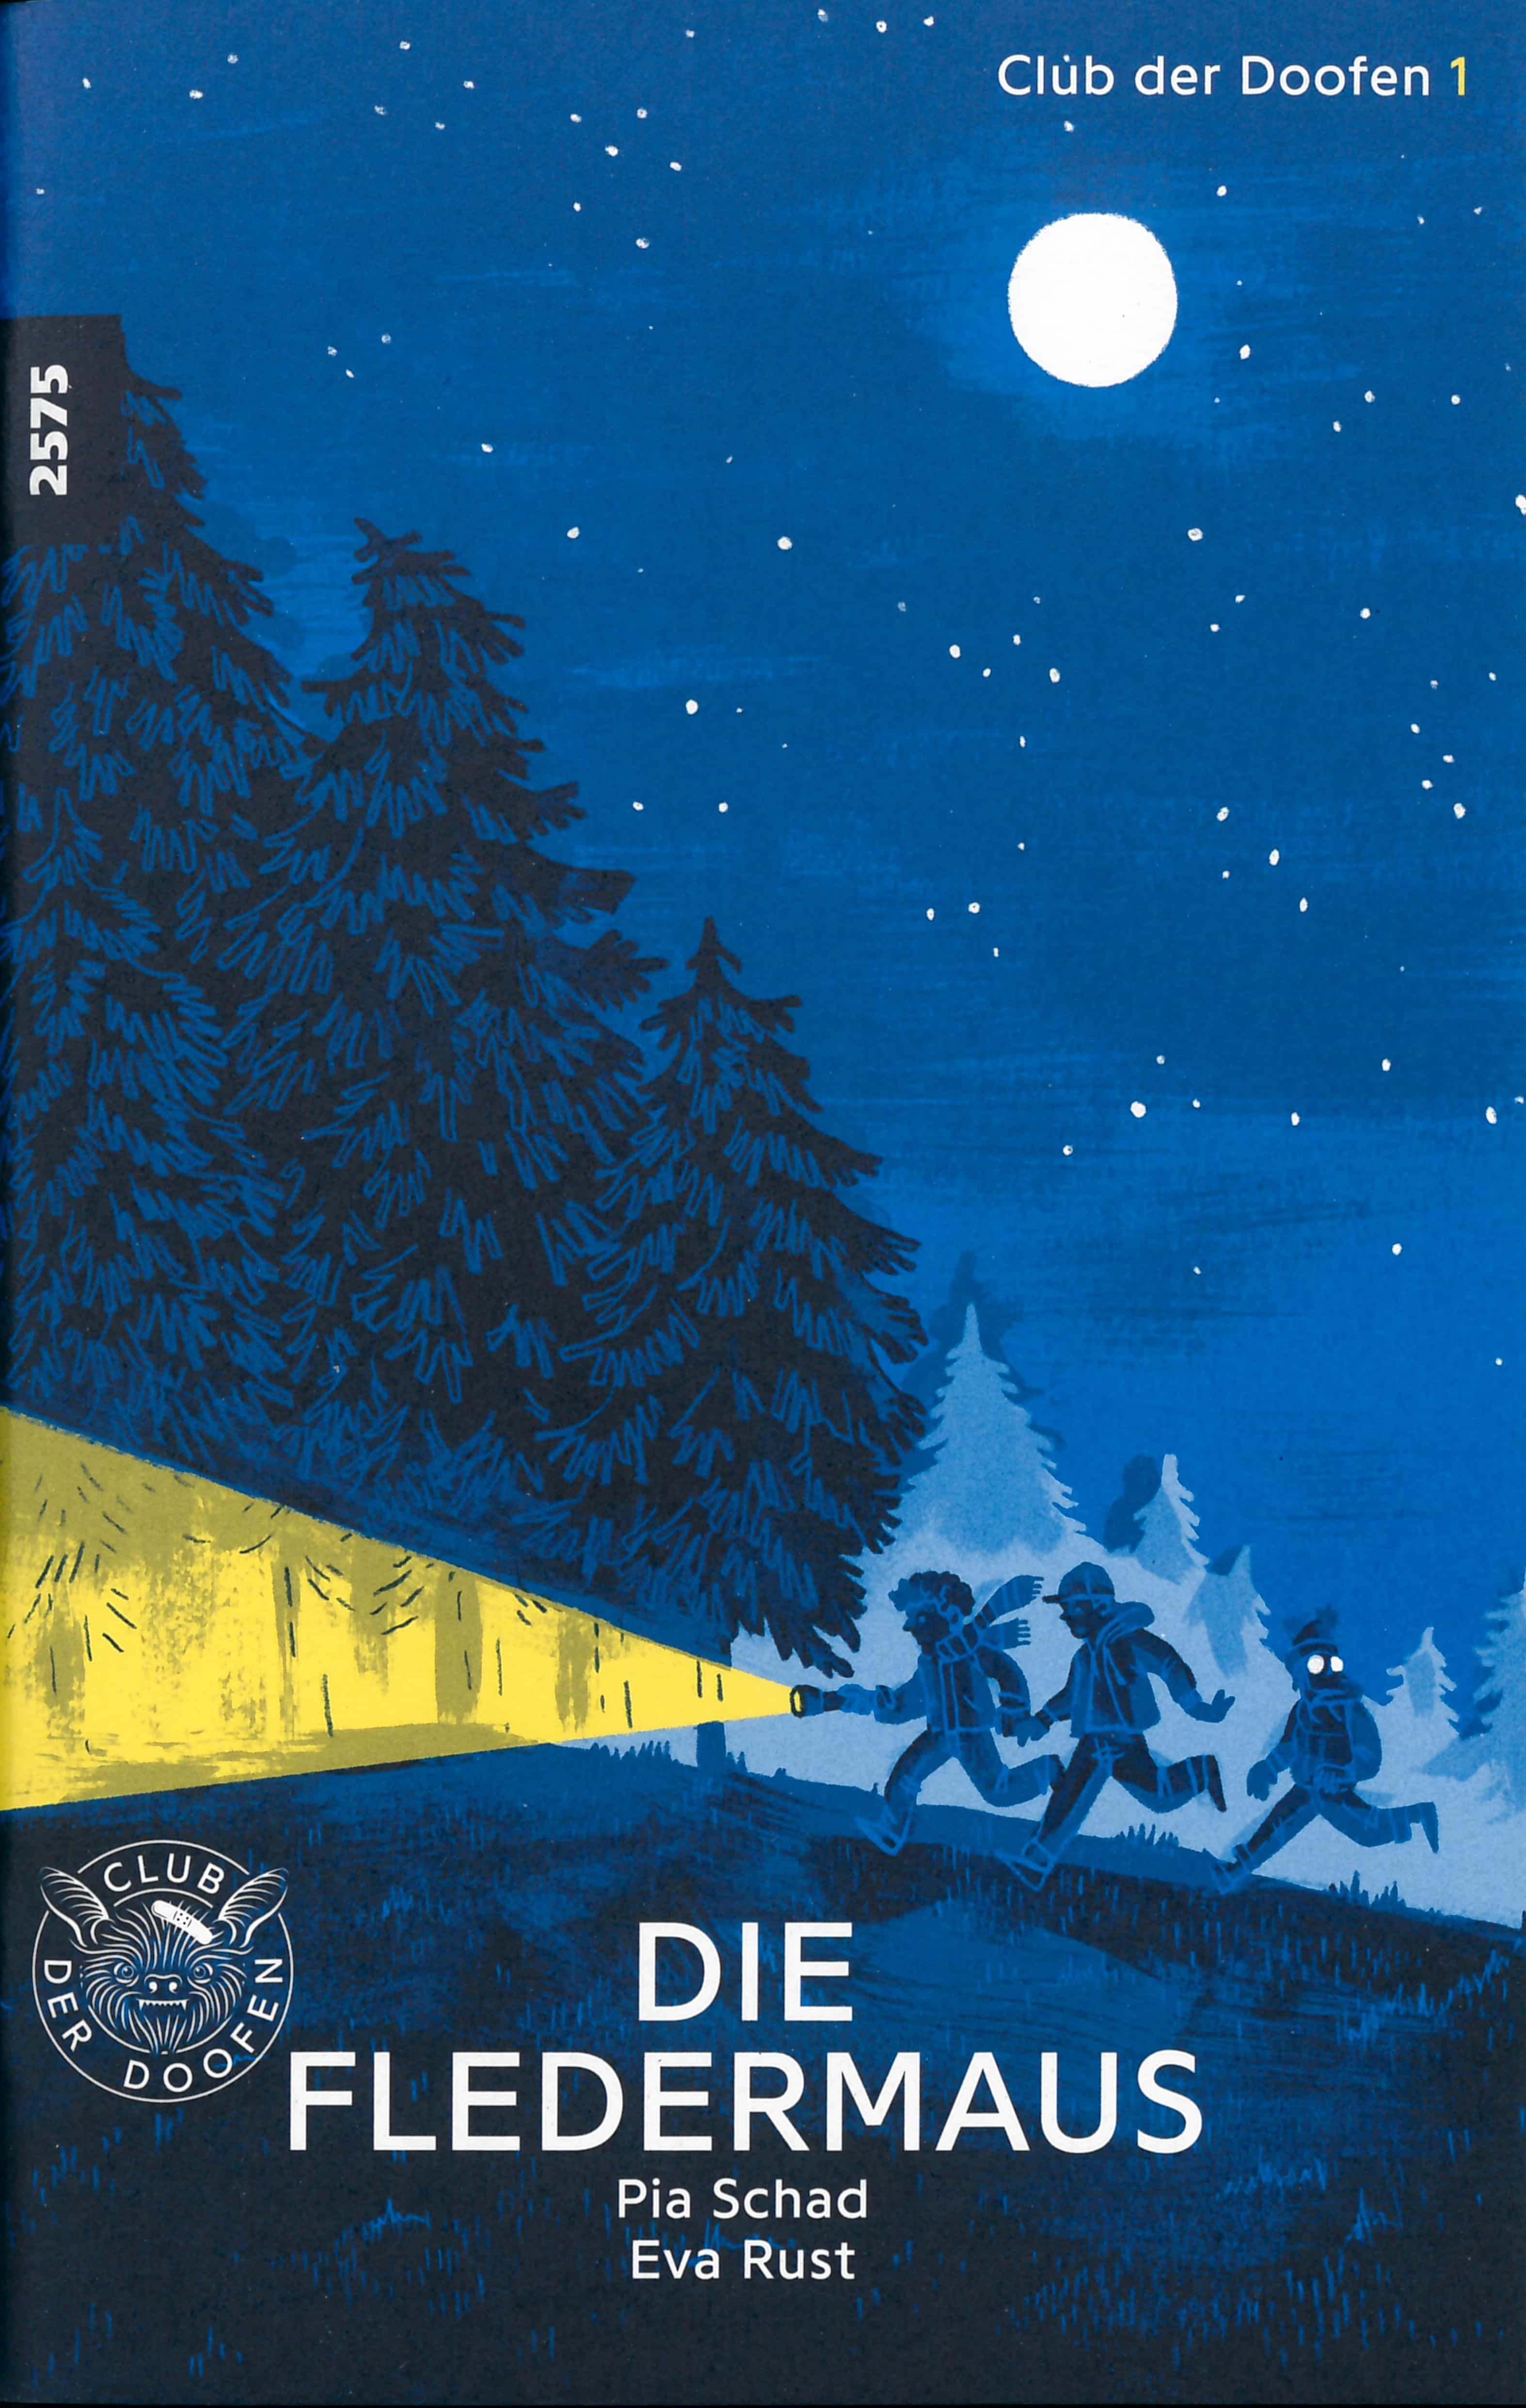 Club der Doofen 1: Die Fledermaus, ein Jugendbuch von Pia Schad, Illustration von Eva Rust, SJW Verlag, Krimi